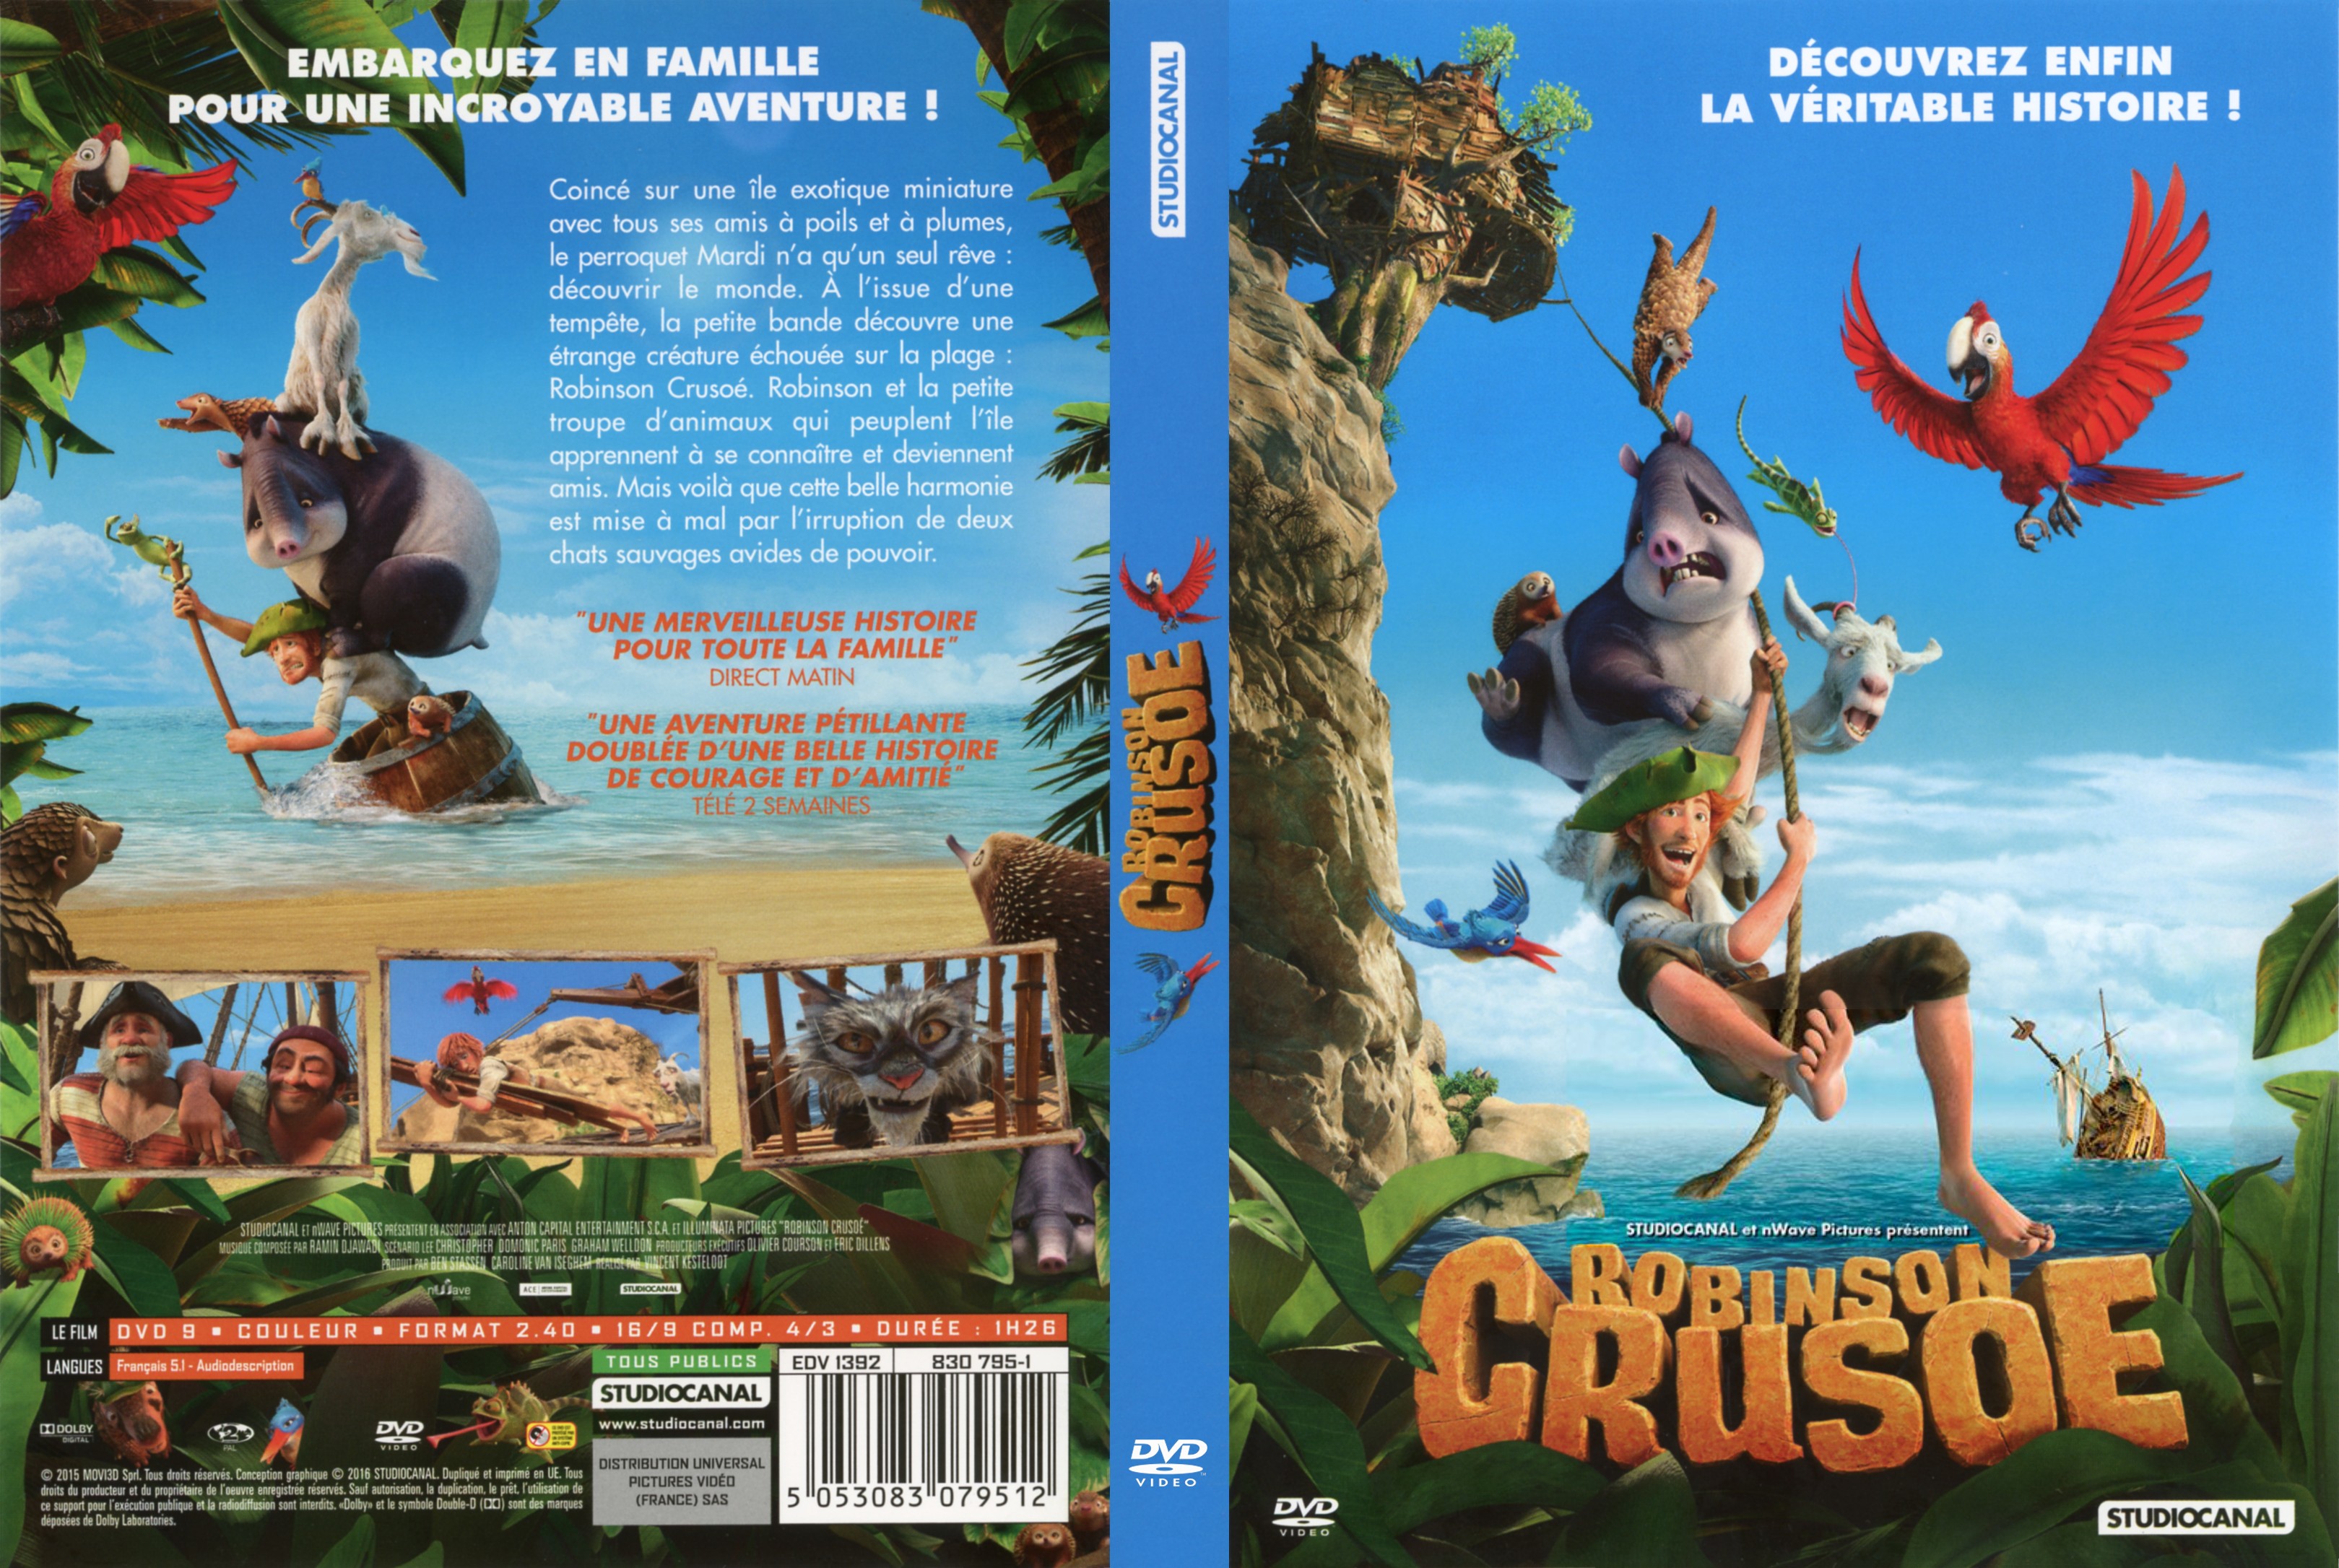 Jaquette DVD Robinson Cruso